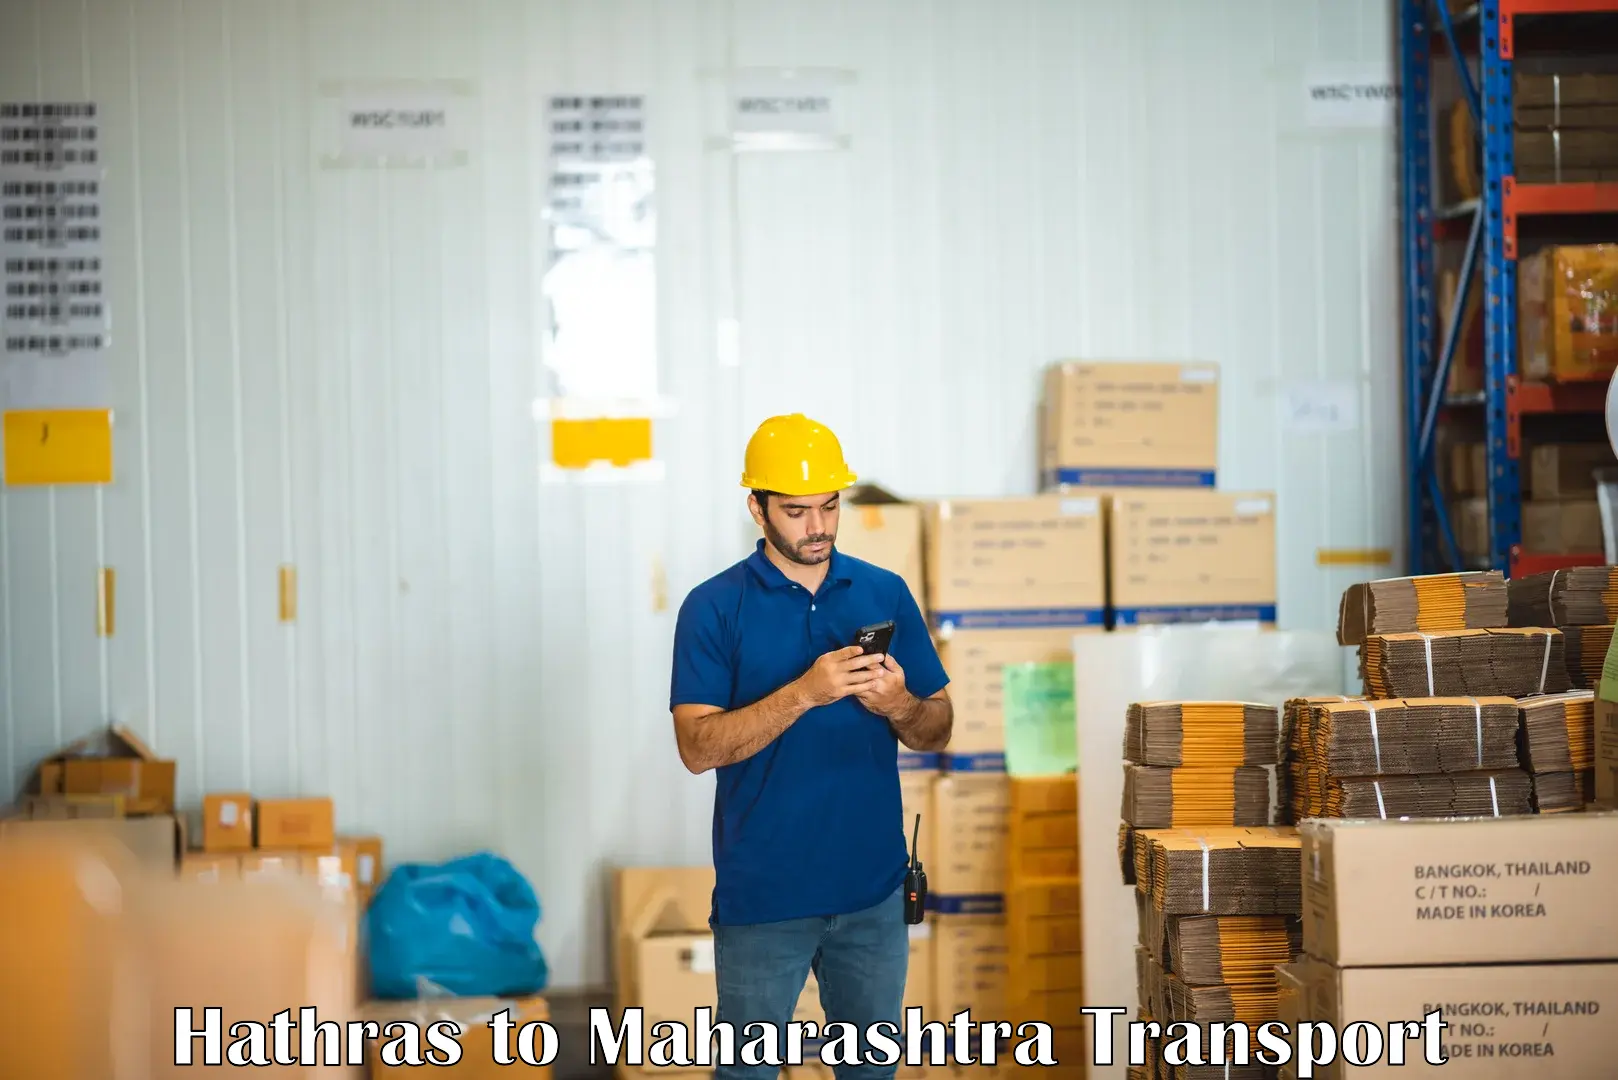 All India transport service Hathras to Maharashtra